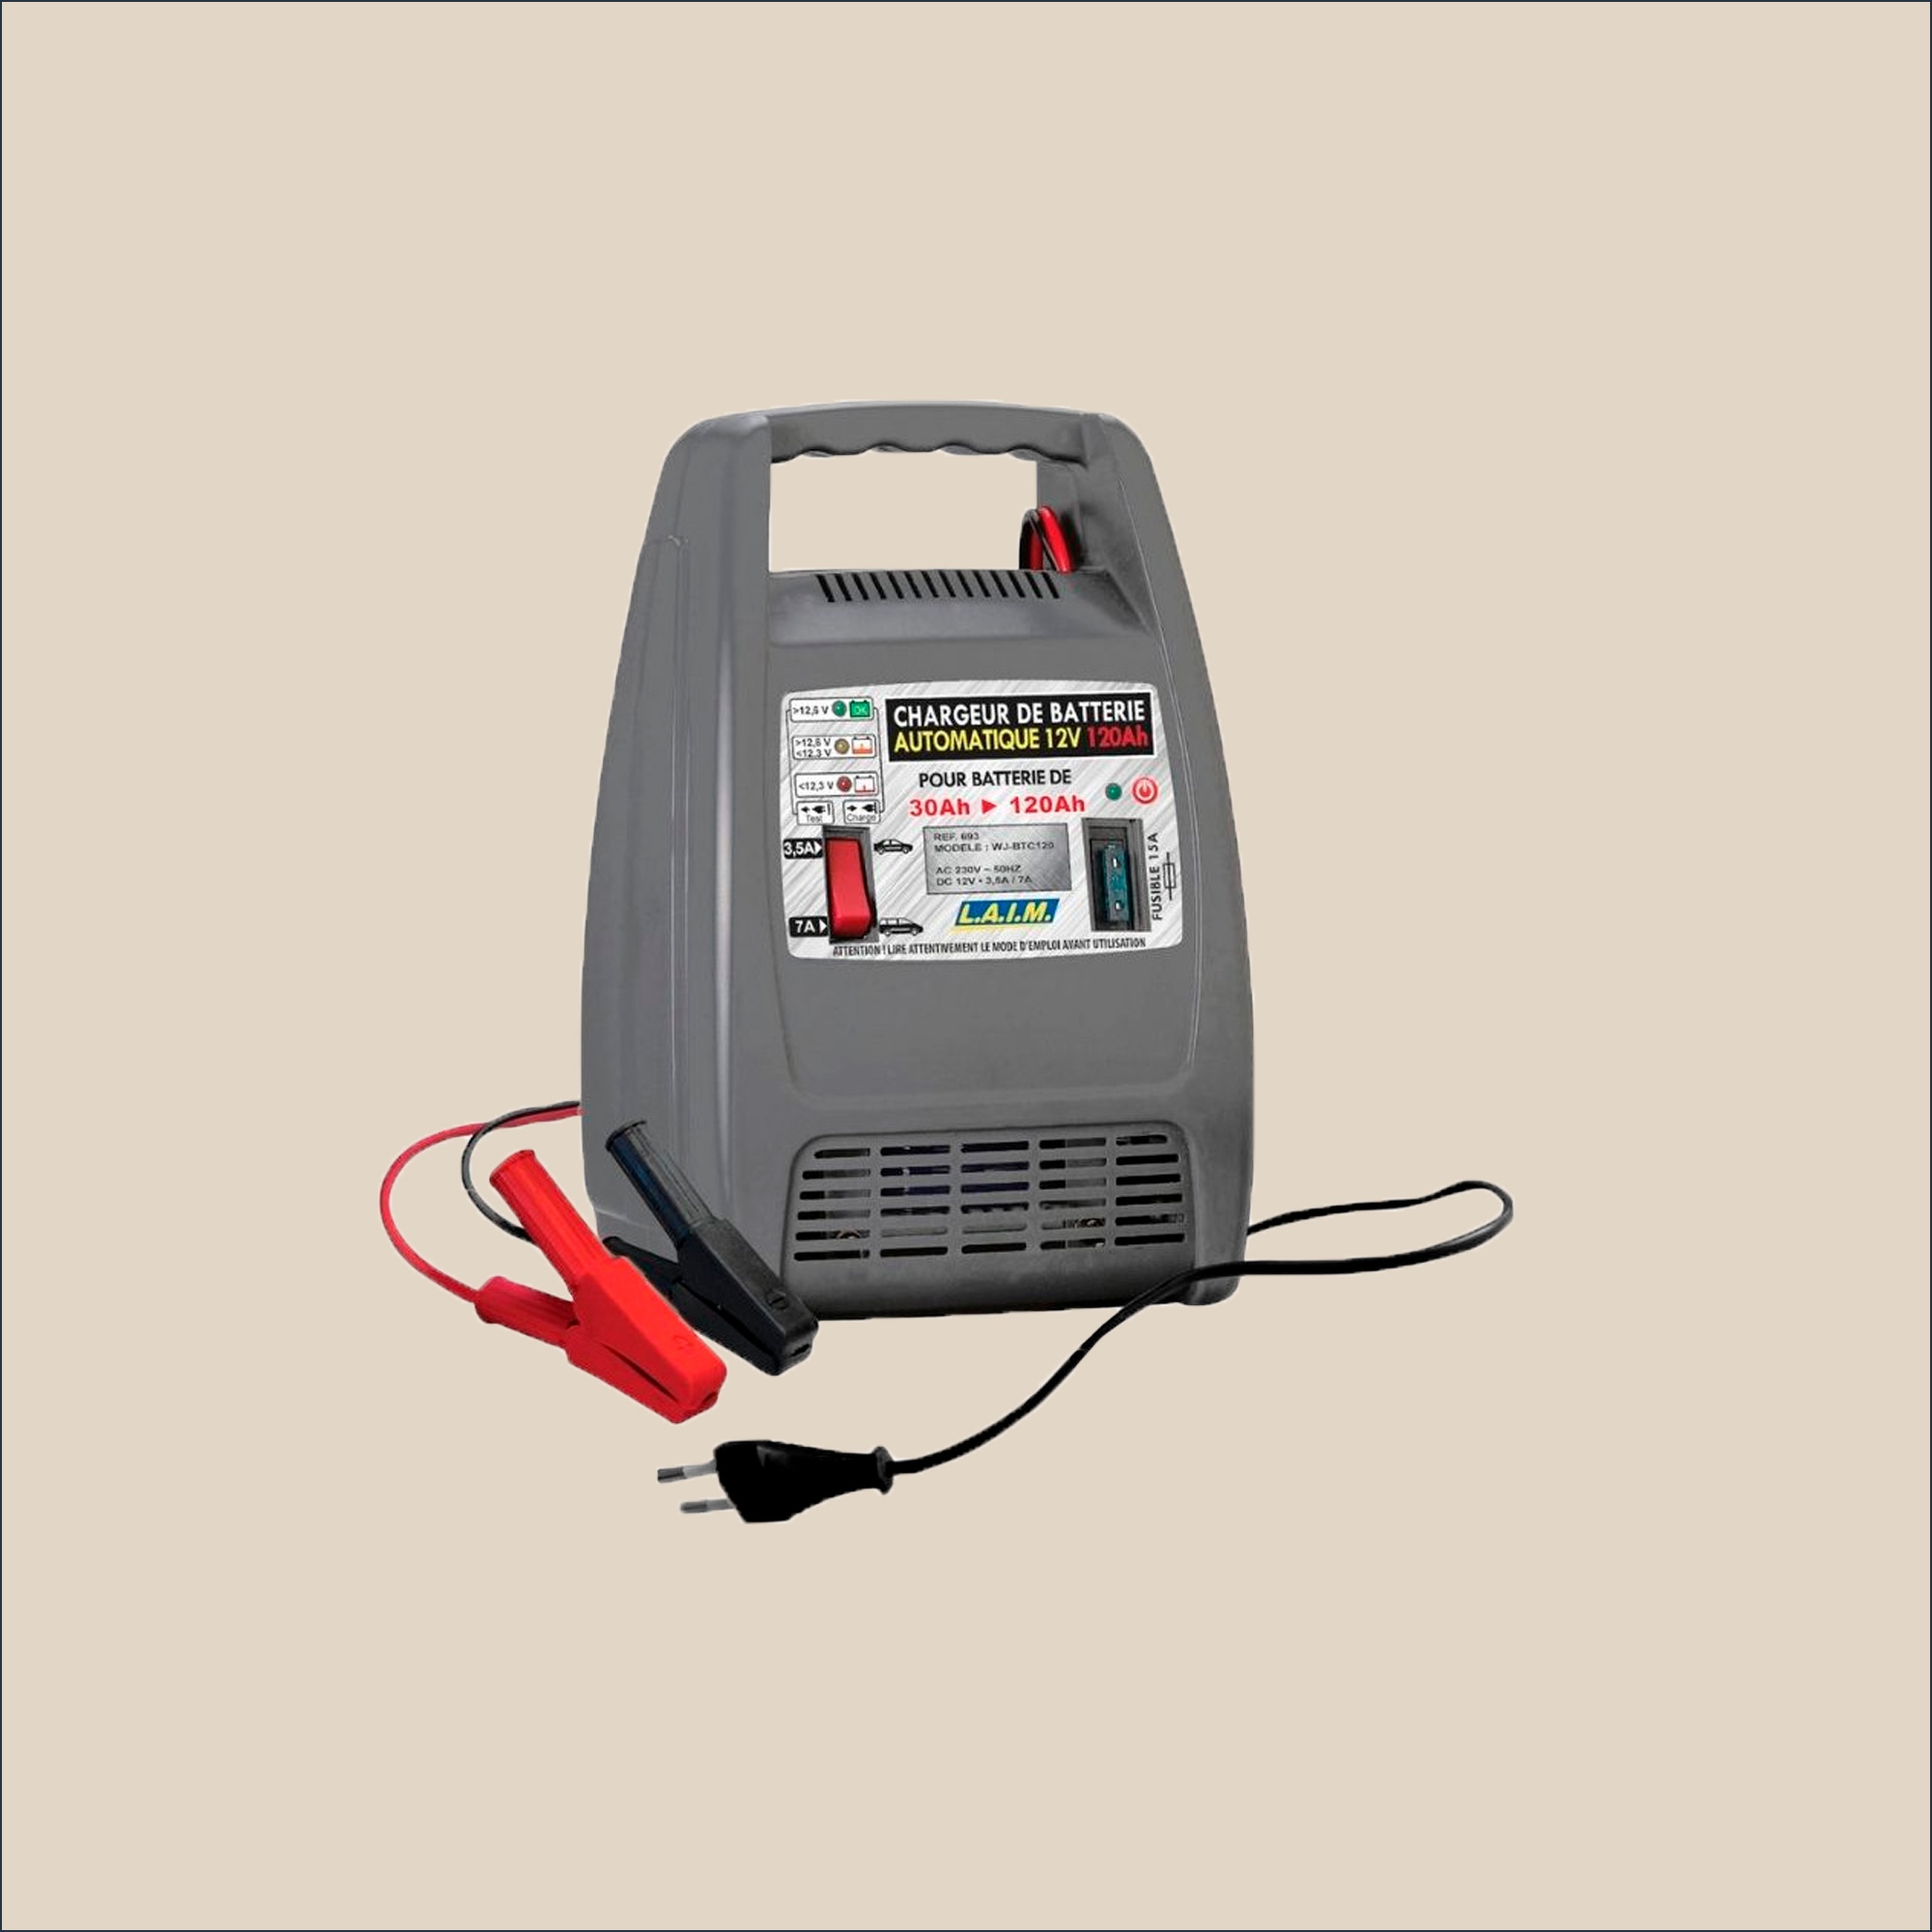 Chargeur batterie 12V 120Ah automatique pour batteries de 30 à 120Ah